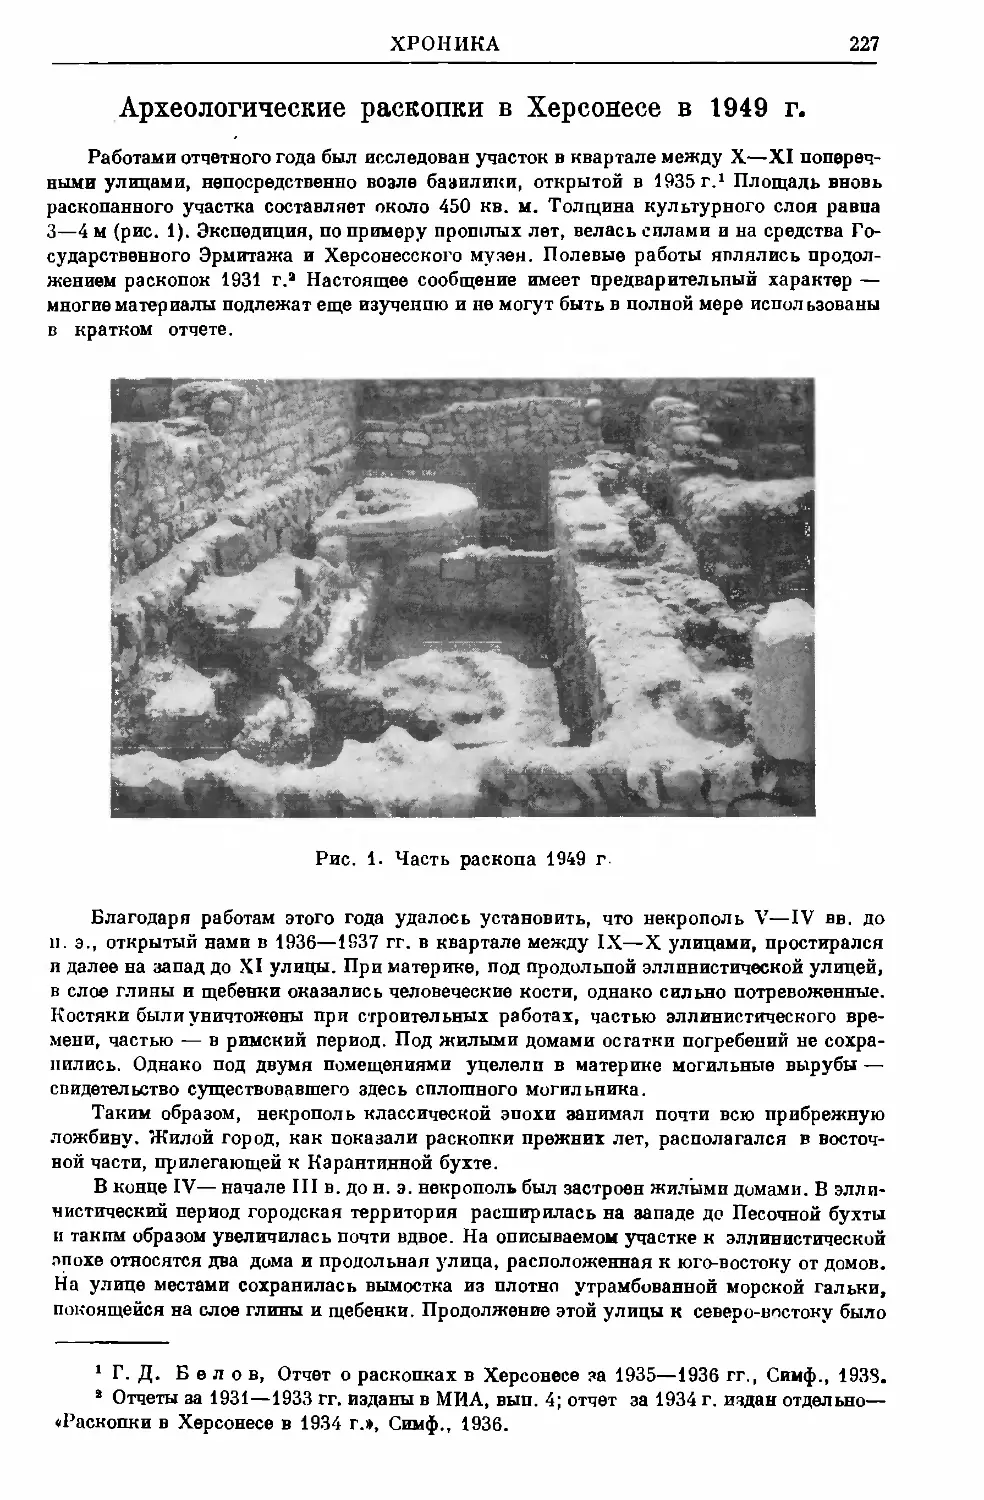 Белов Г.Д. – Археологические раскопки в Херсонесе в 1949 г